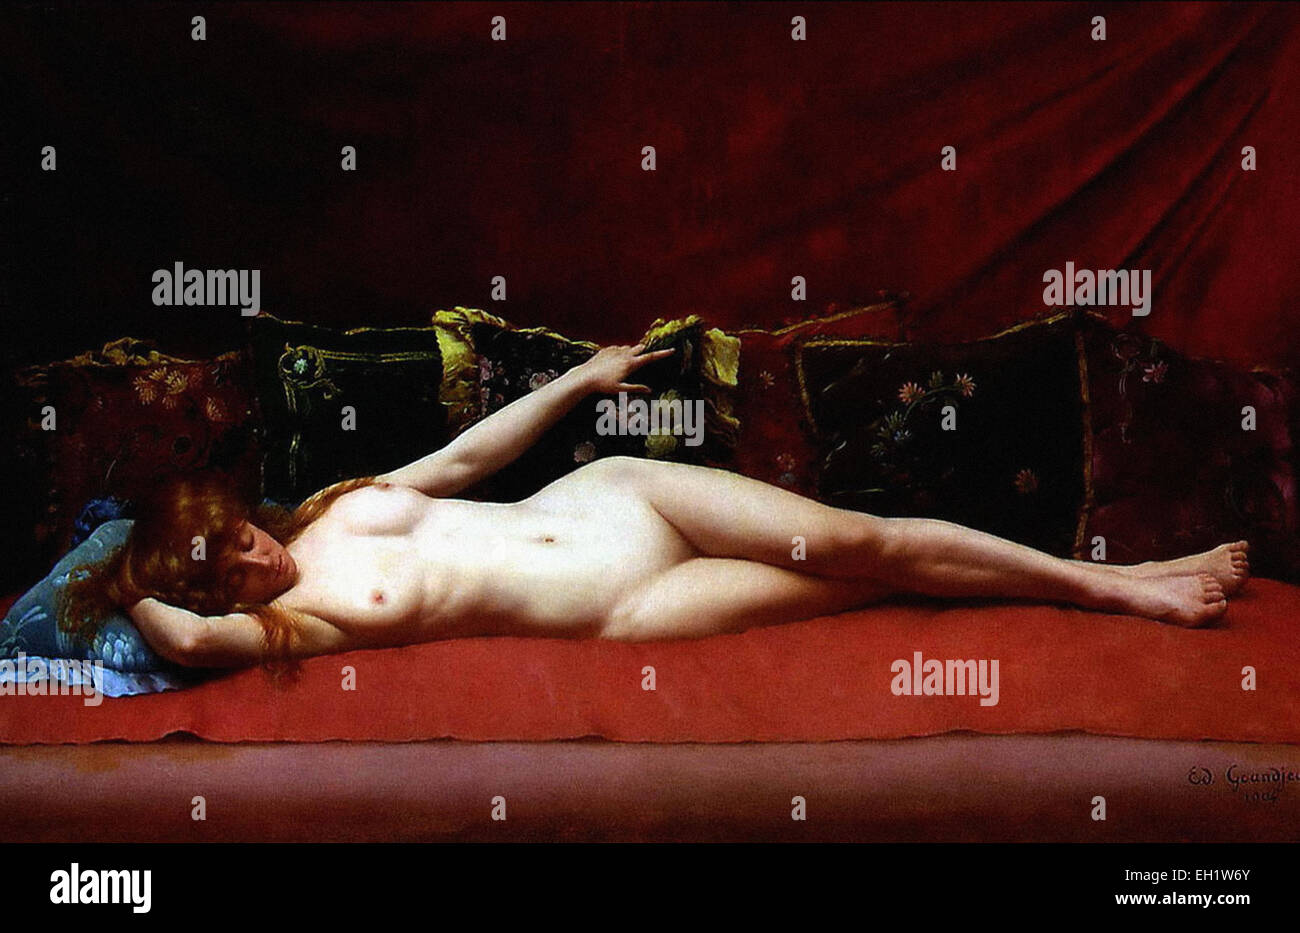 Edmond-Georges Grandjean Femme nue allongée Photo Stock - Alamy